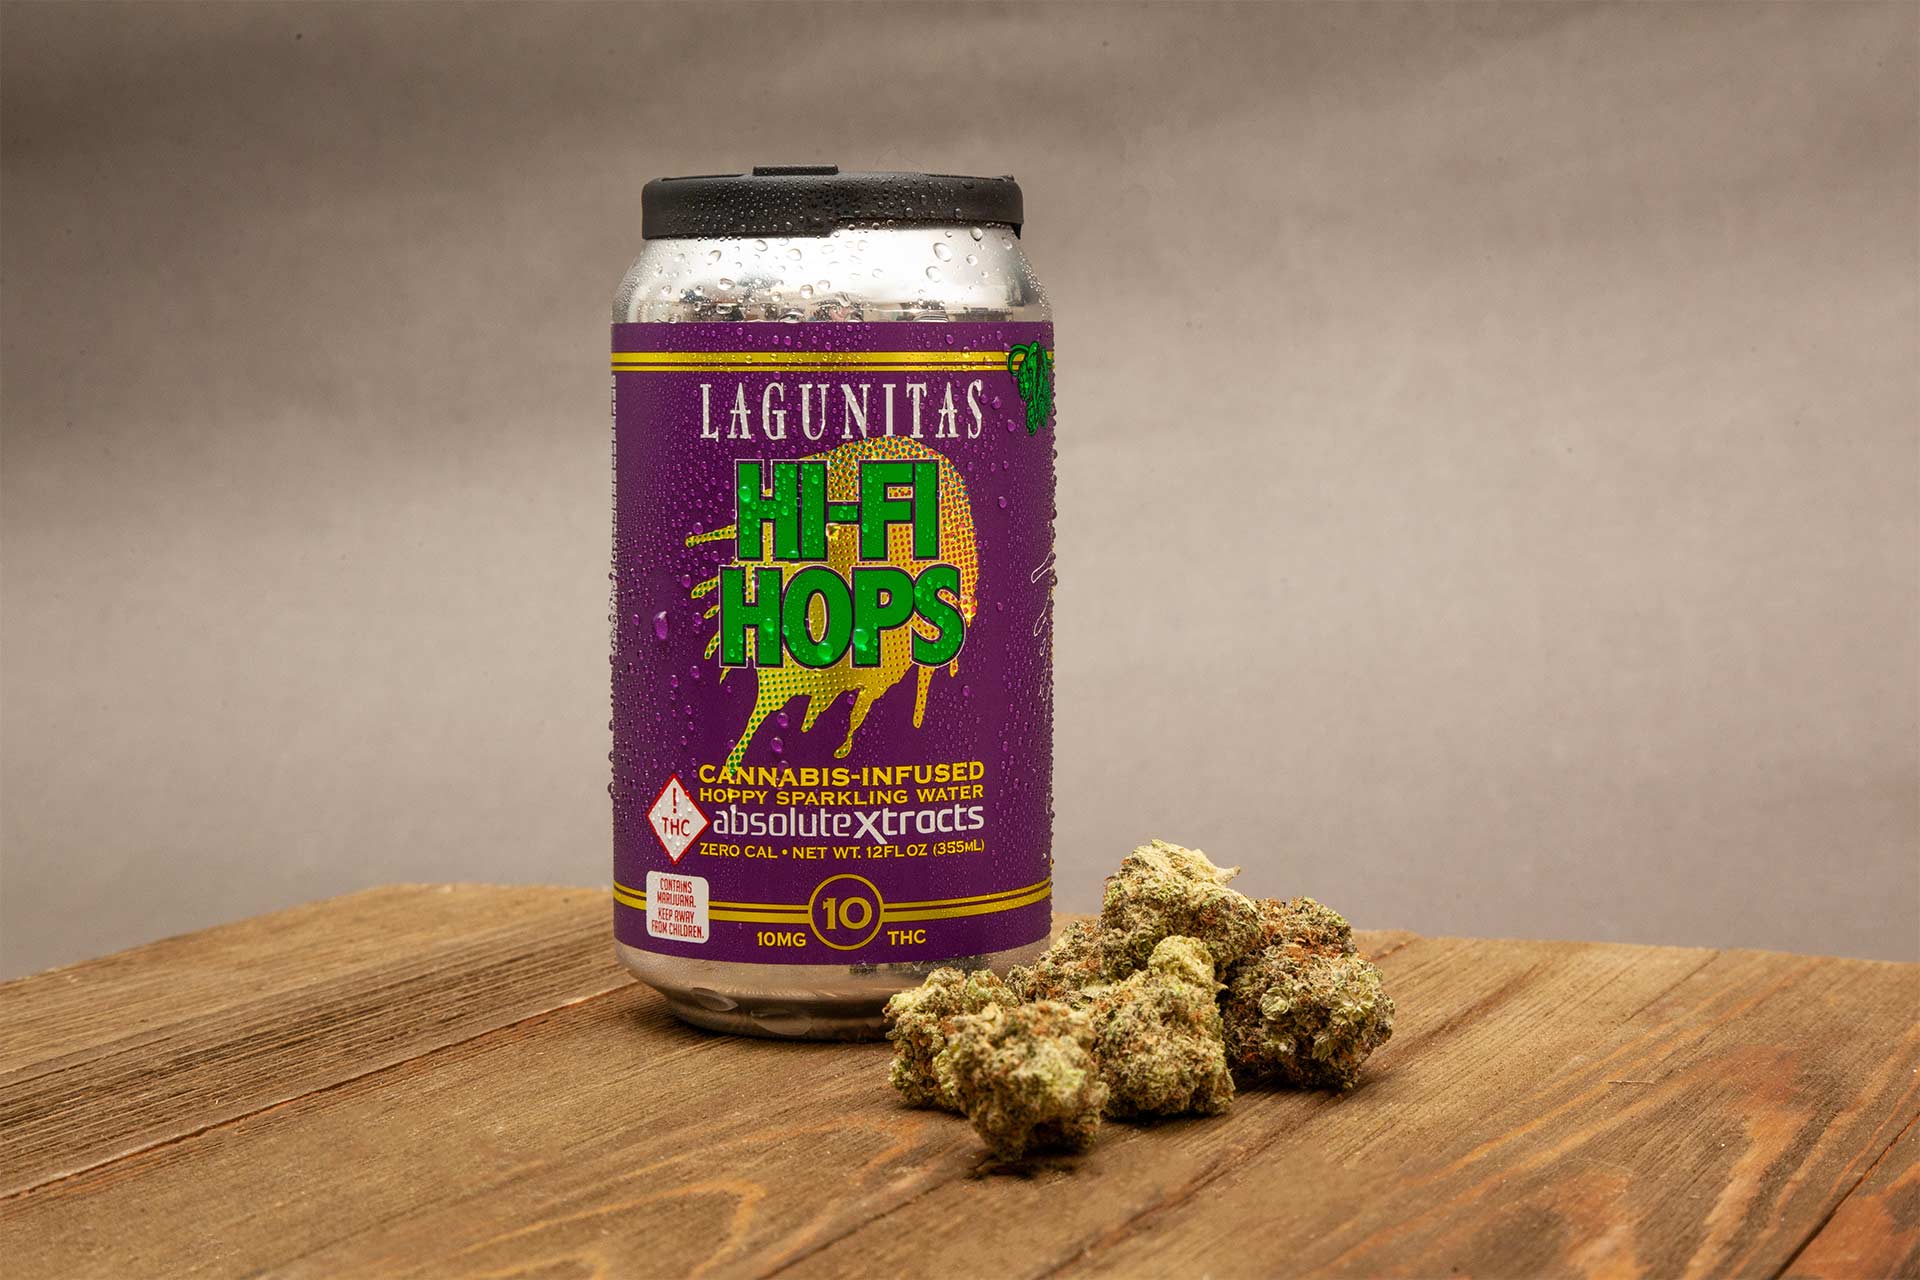 Lagunitas - Cannabis Hoppy Water - Lightshade Colorado